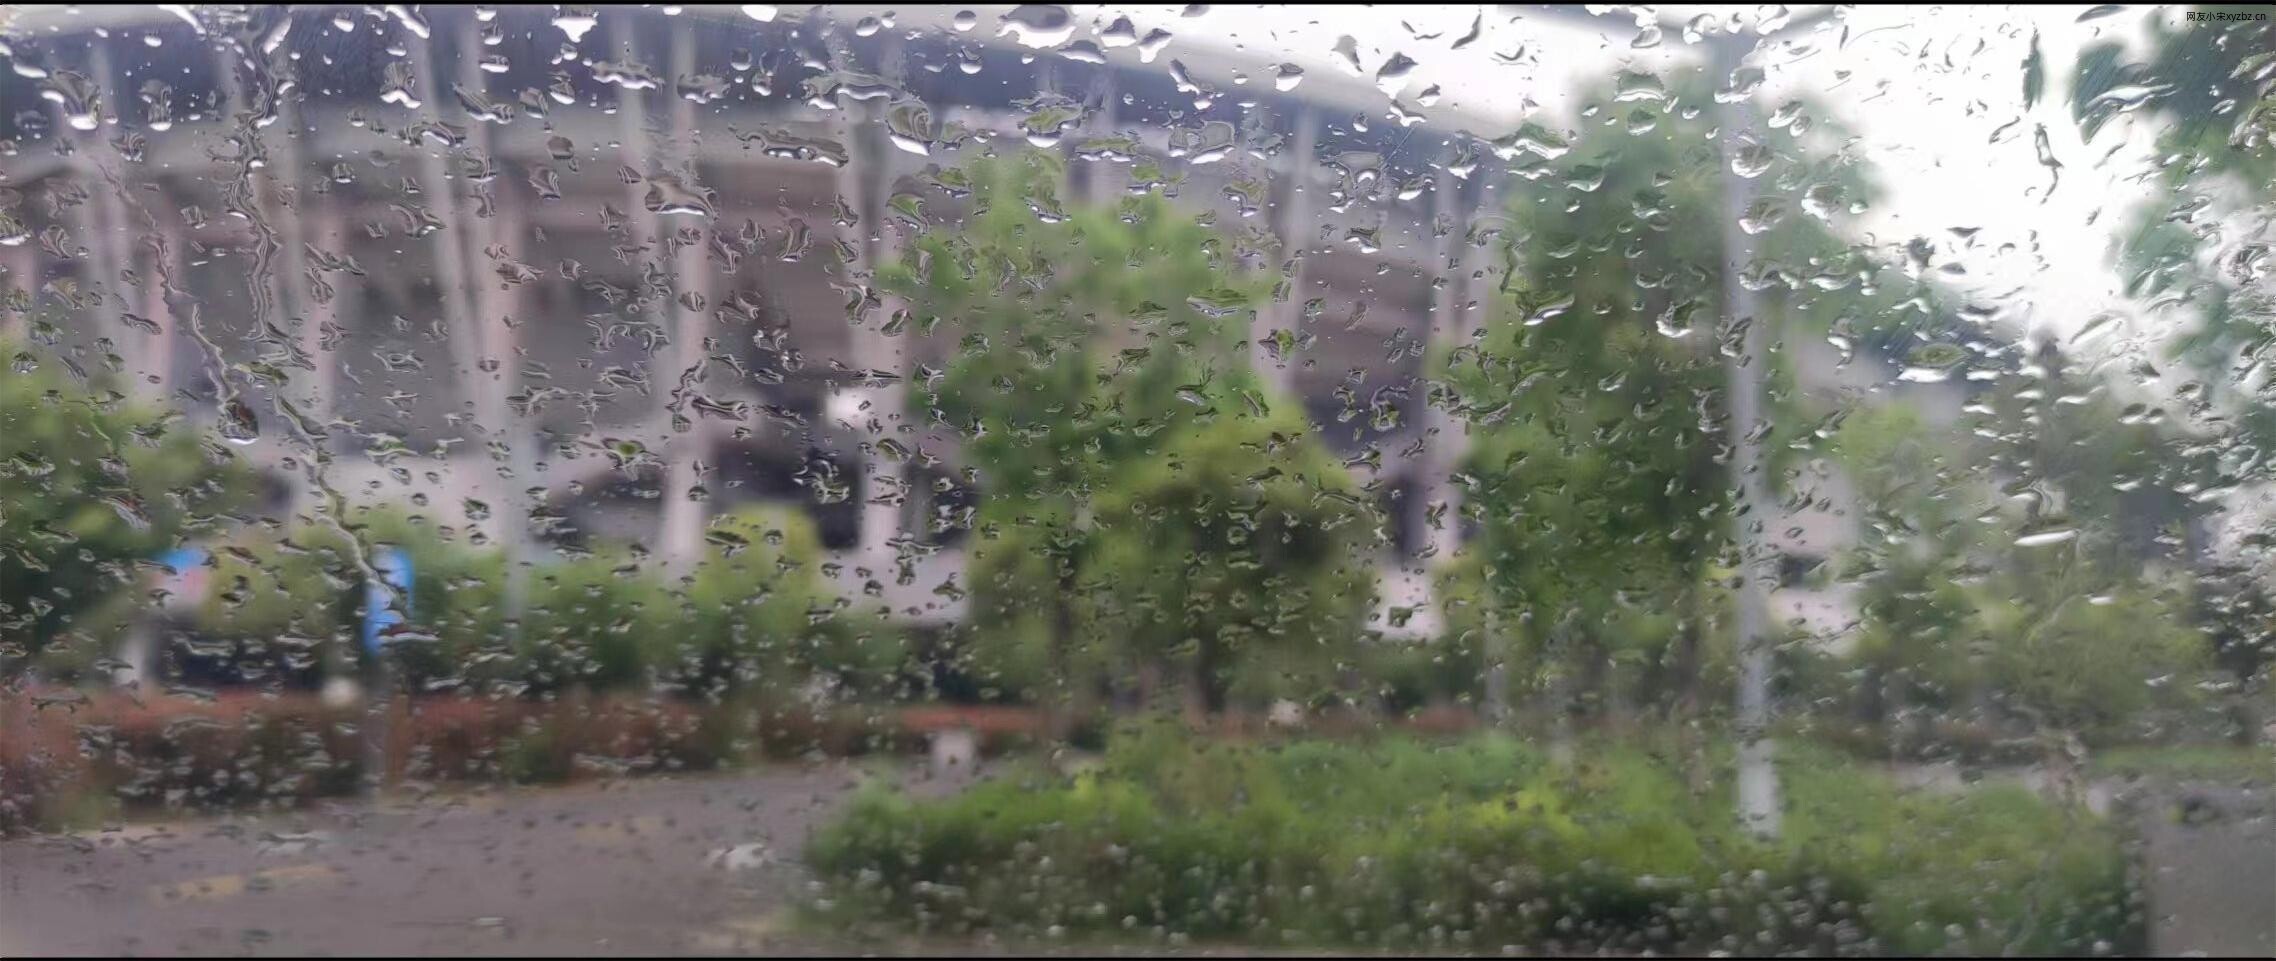 停车场的雨天.jpg